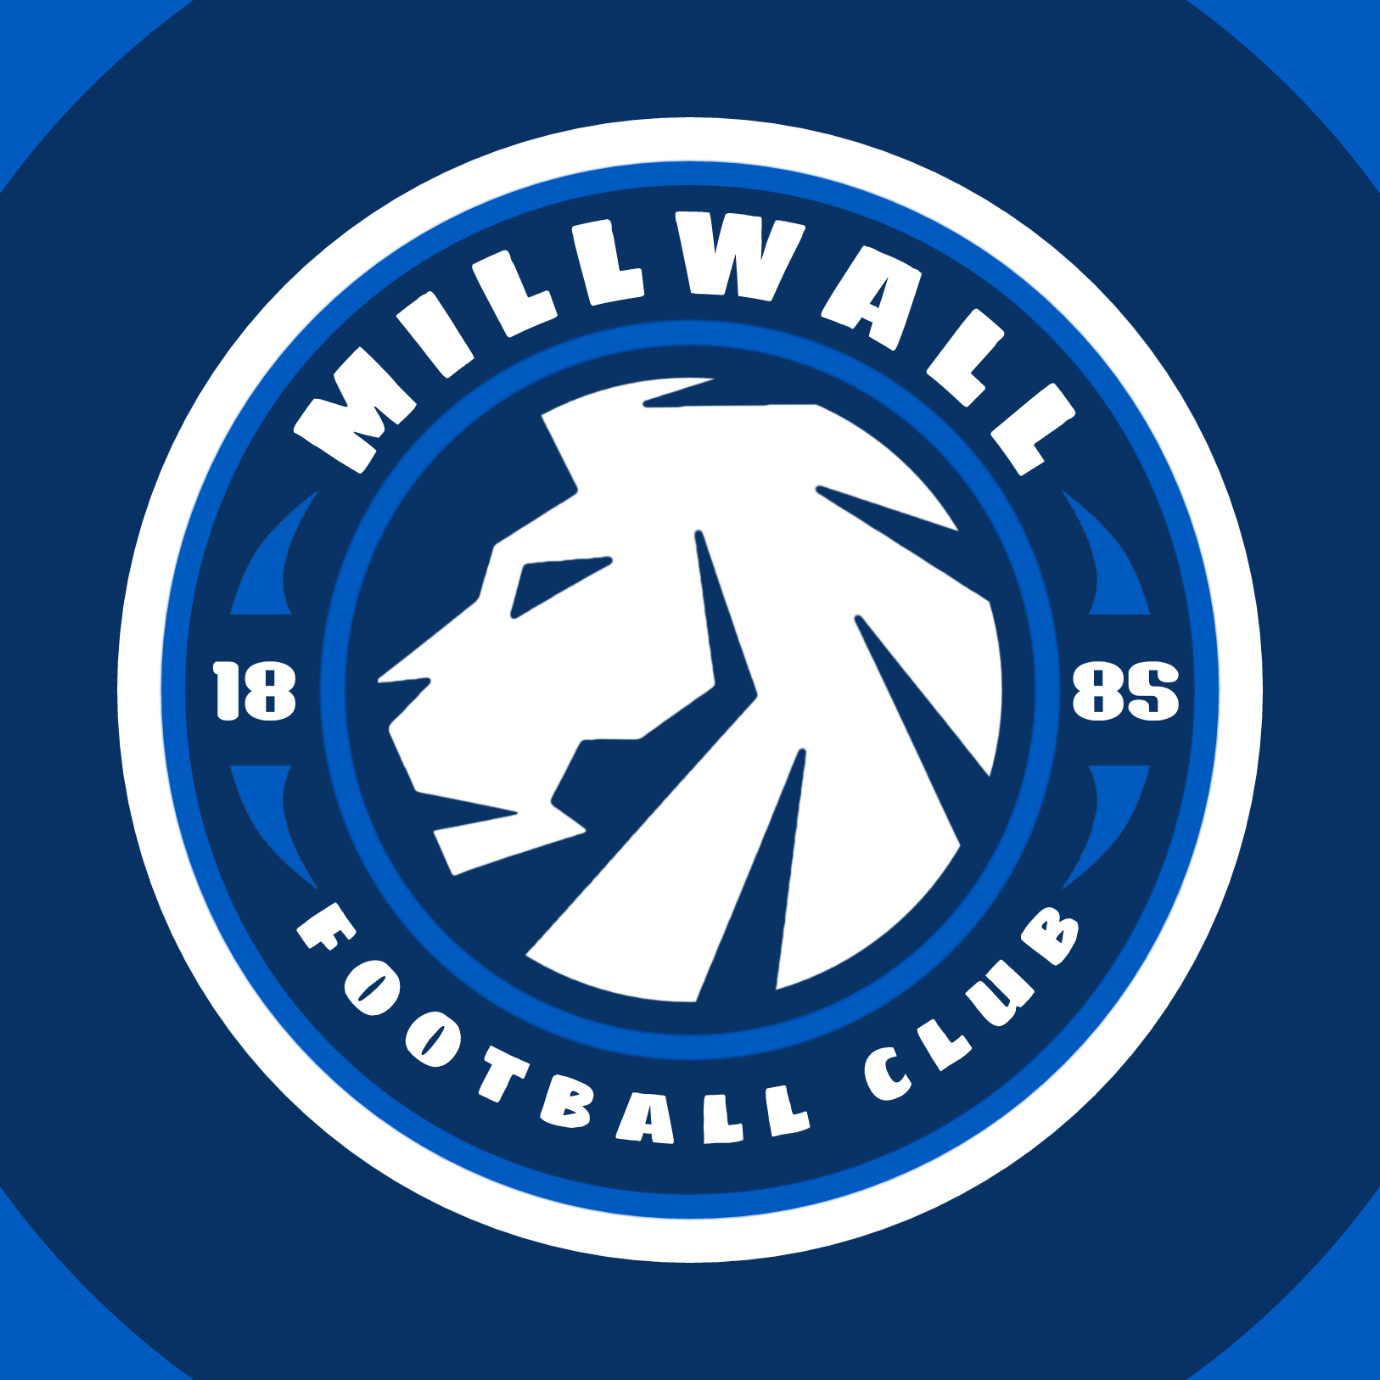 MILLWALL F.C - MILLWALL F.C added a new photo.